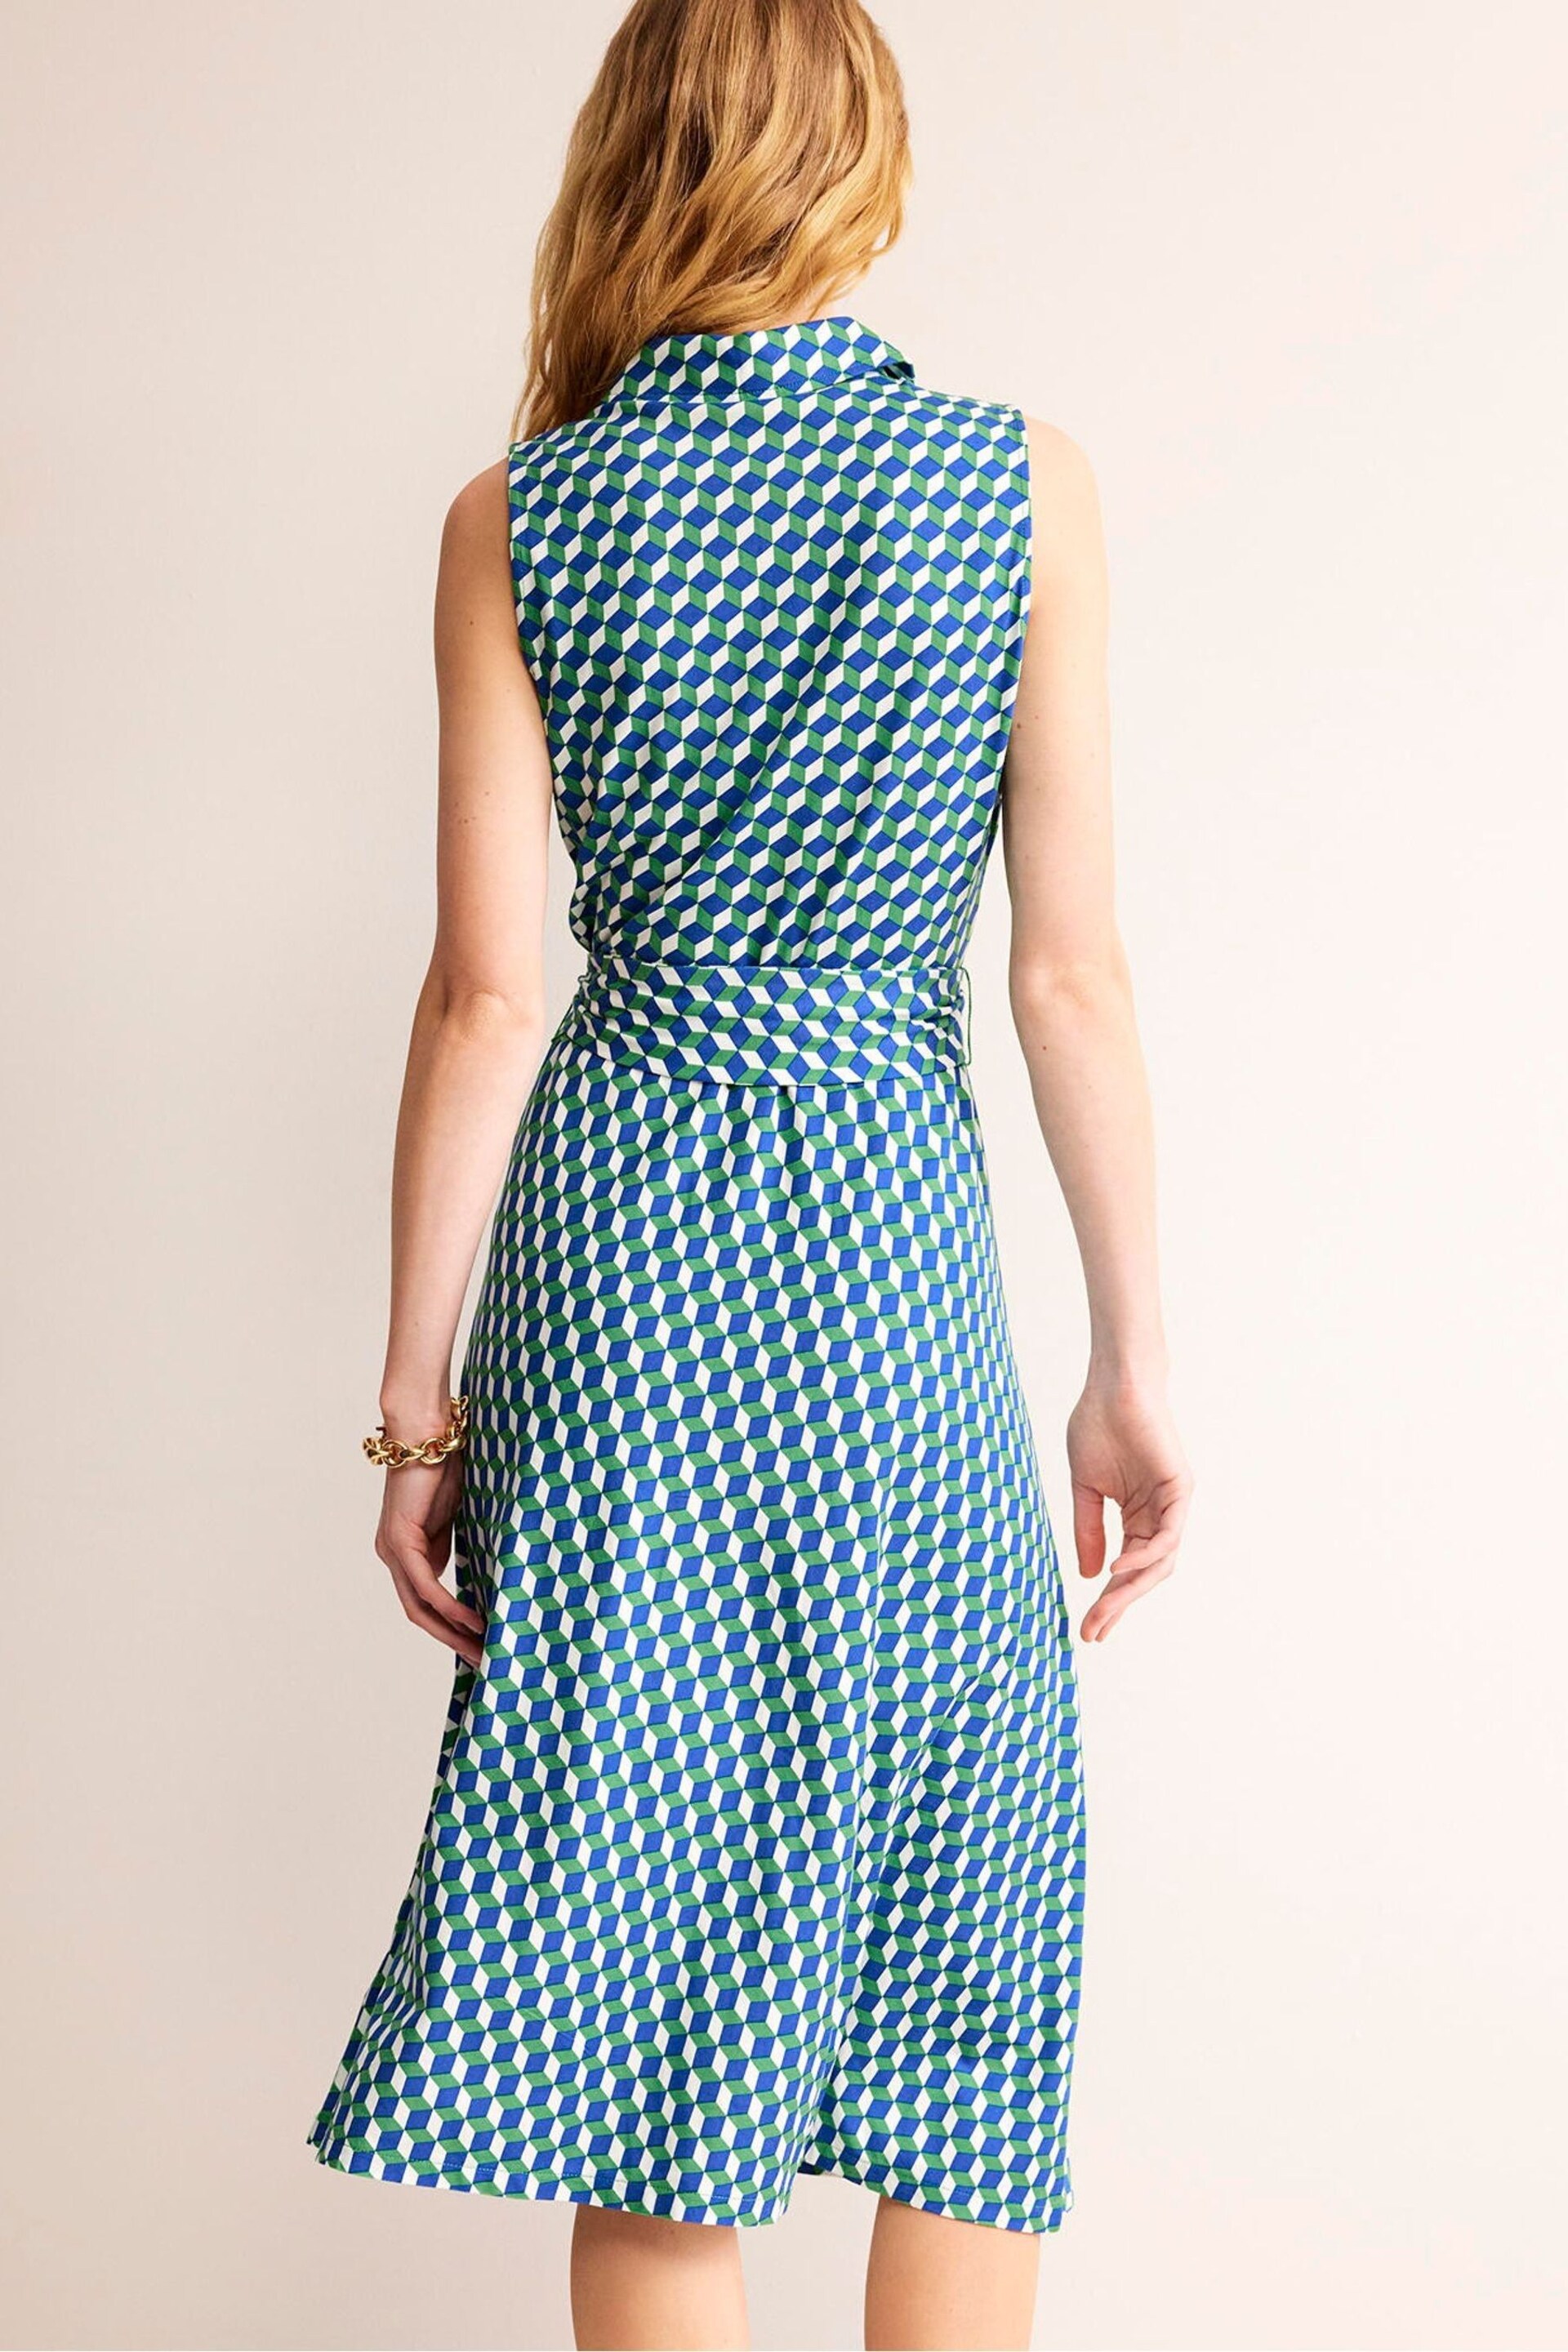 Boden Green Laura Sleeveless Shirt Dress - Image 3 of 5